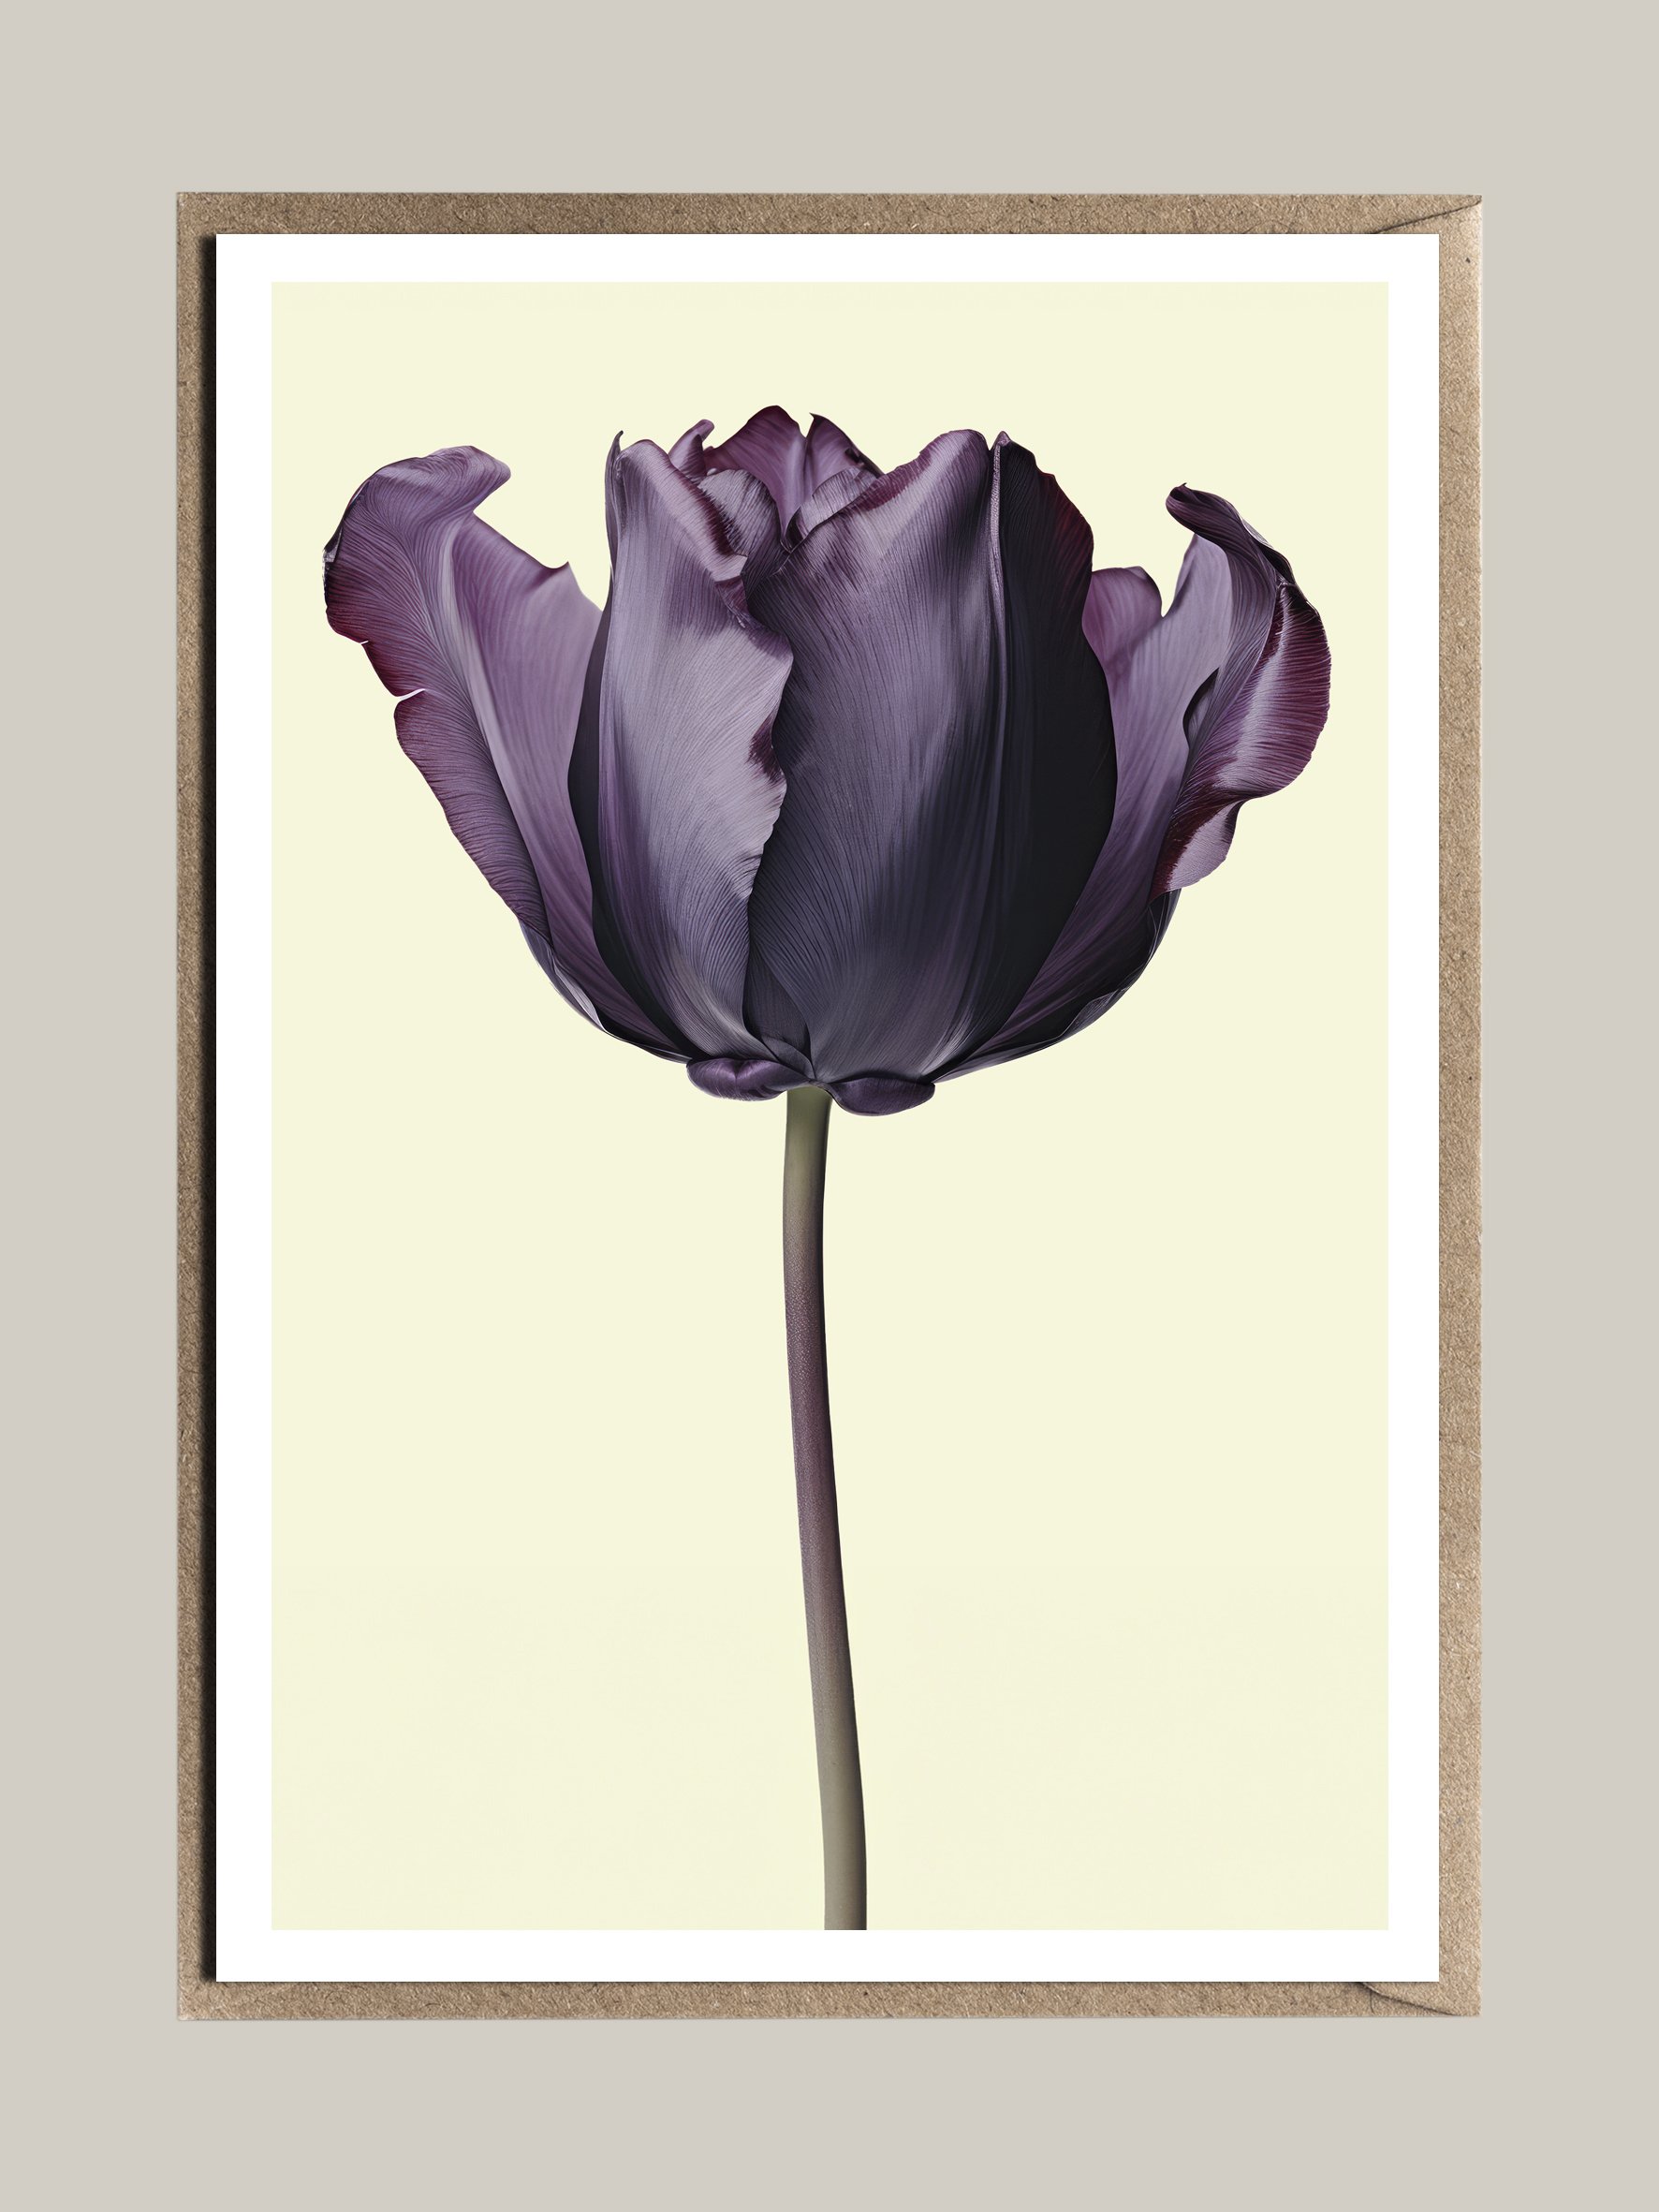 FAC_Floral_Elegance_purple_tulip.jpg